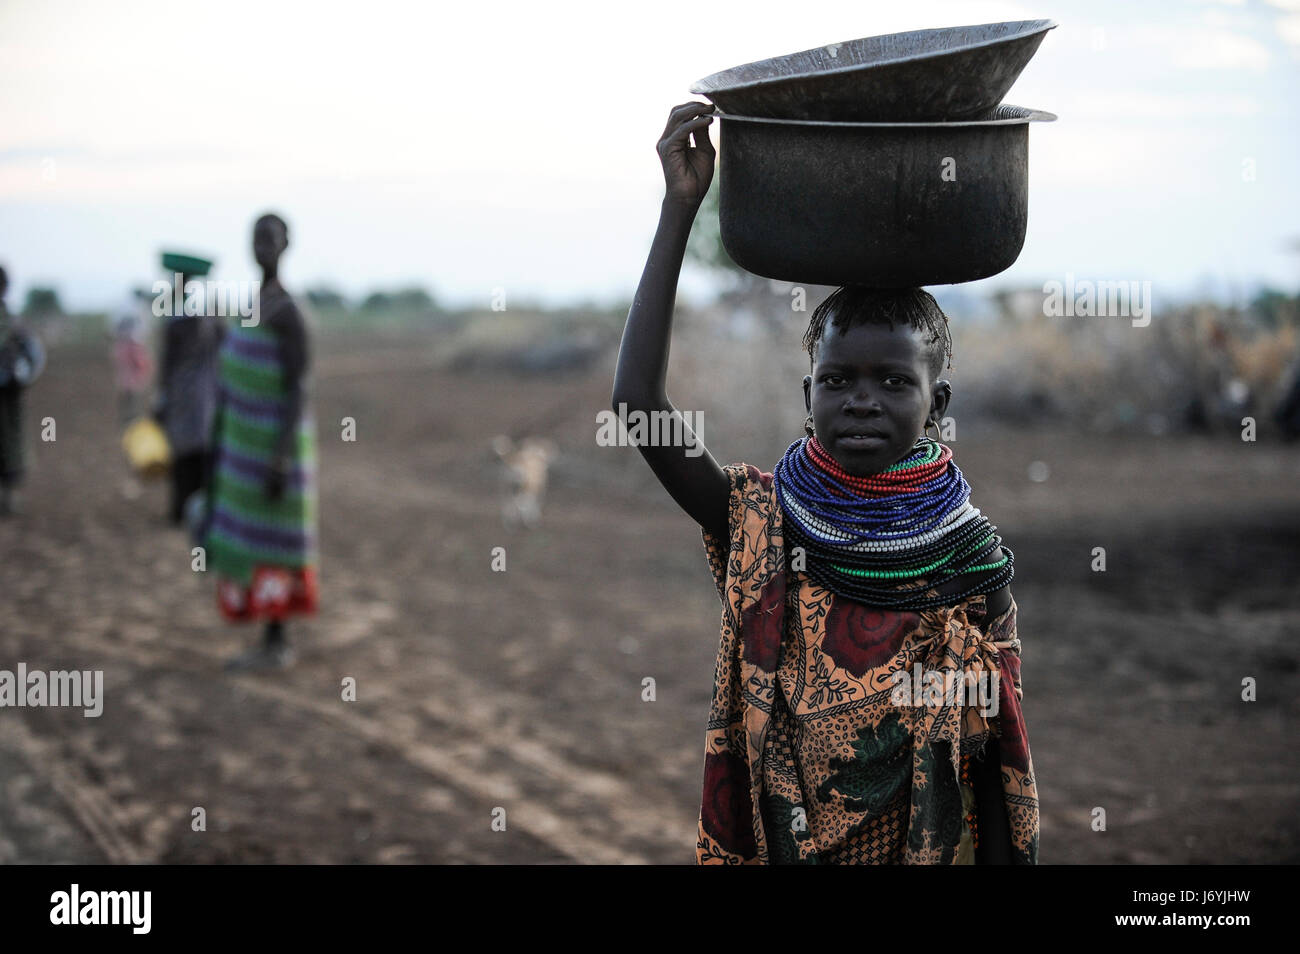 KENYA Regione Turkana, Kakuma, Turkana una tribù nilotica, la catastrofe della fame è permanente a causa del cambiamento climatico e della siccità, Don Bosco distribuisce cibo a donne e bambini affamati Foto Stock